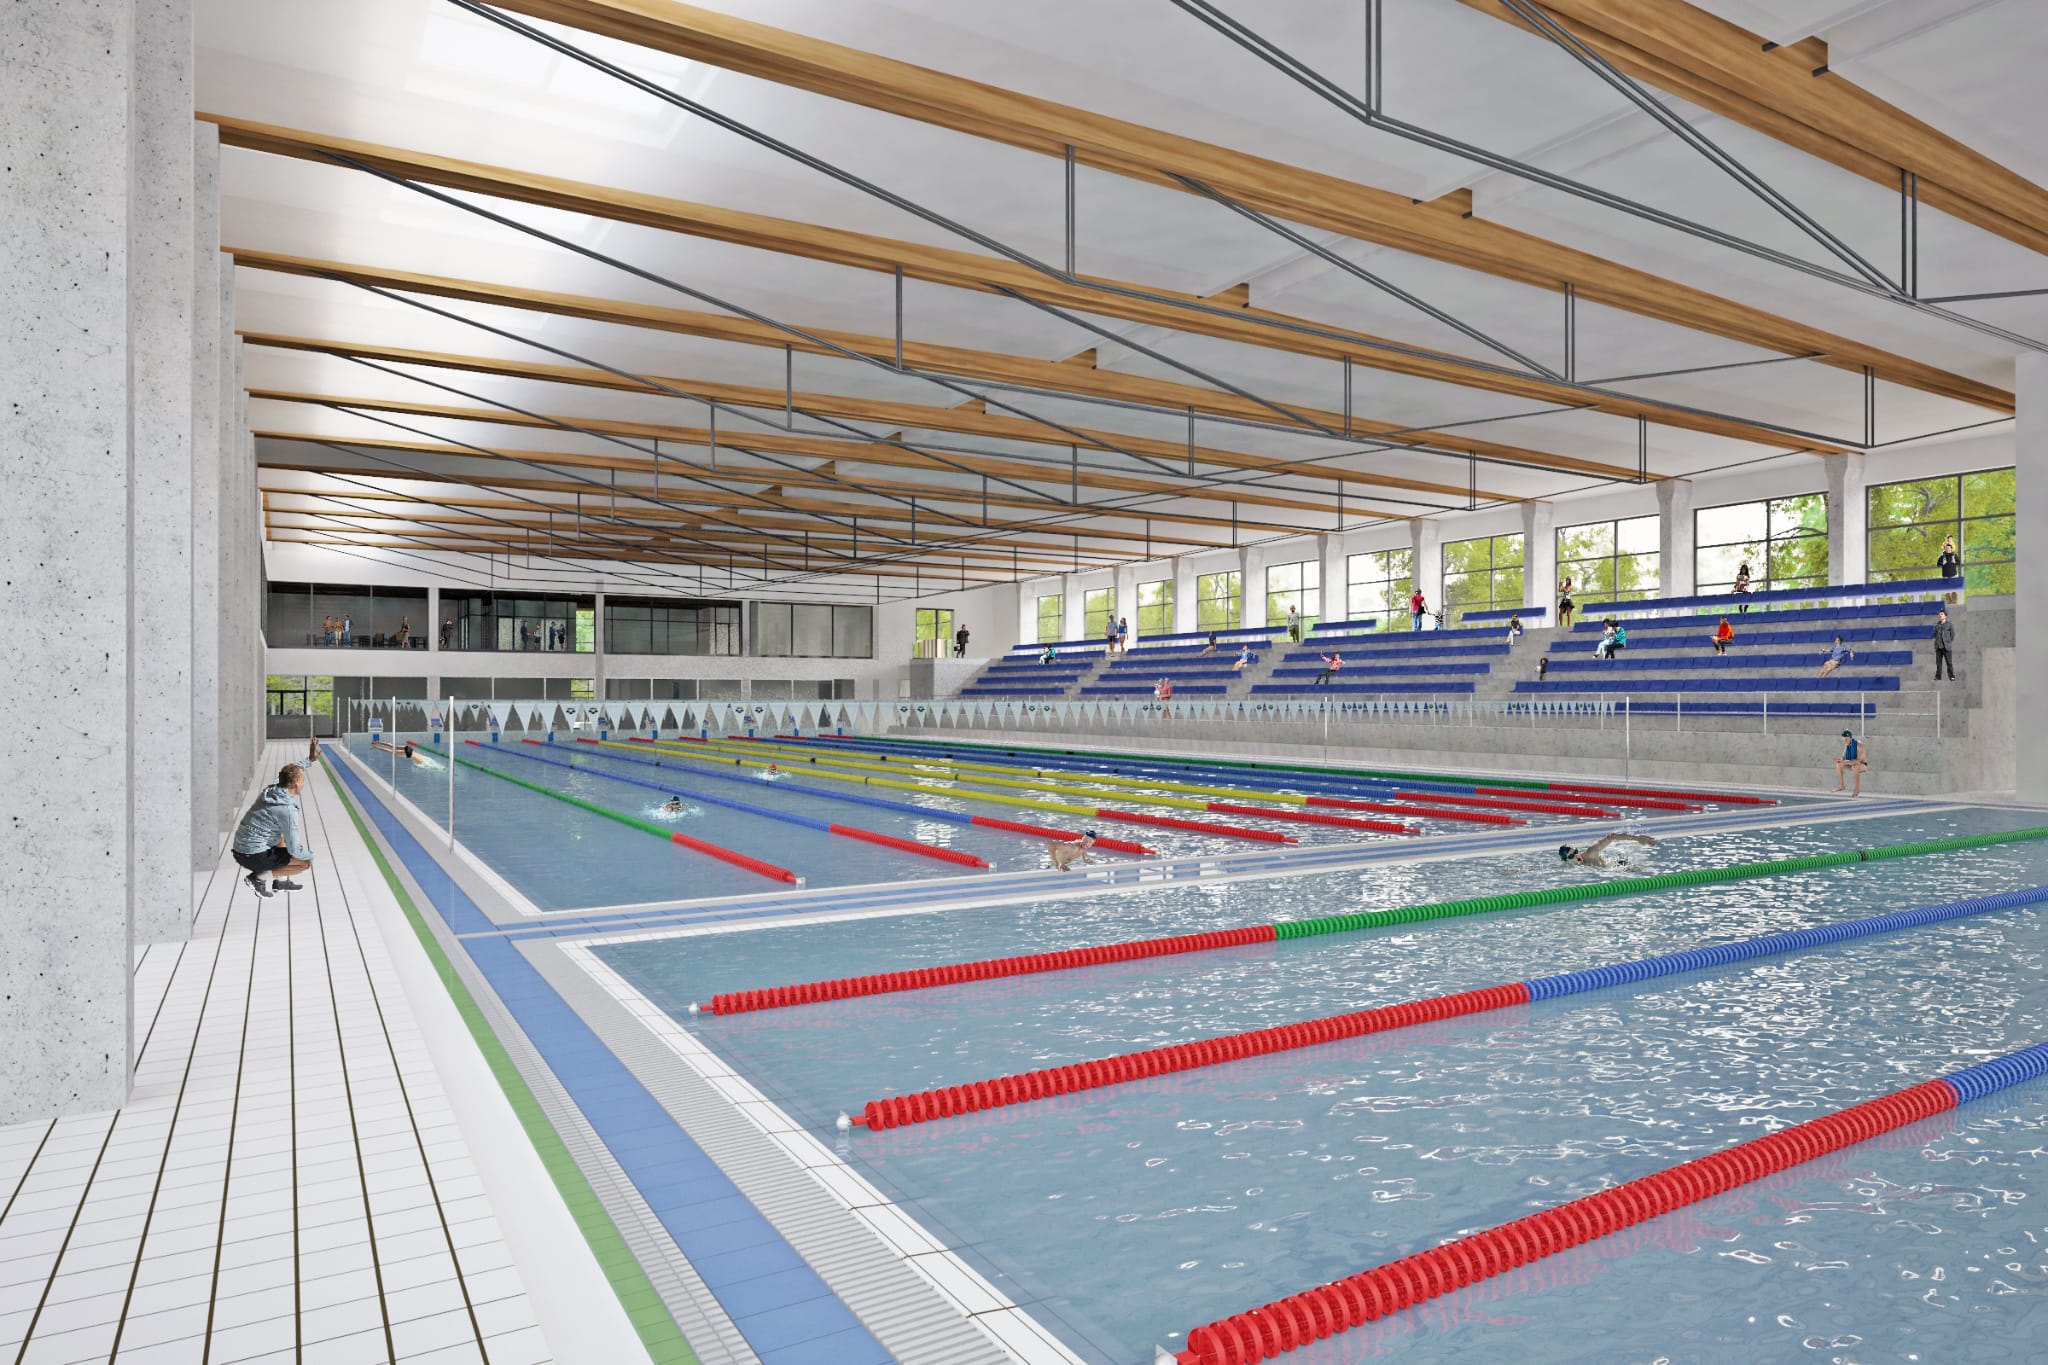 Bjelovarske toplice osim rekreacijskog imat će i vrlo važan sportsko-zdravstveni segment, a to je natkriveni olimpijski bazen